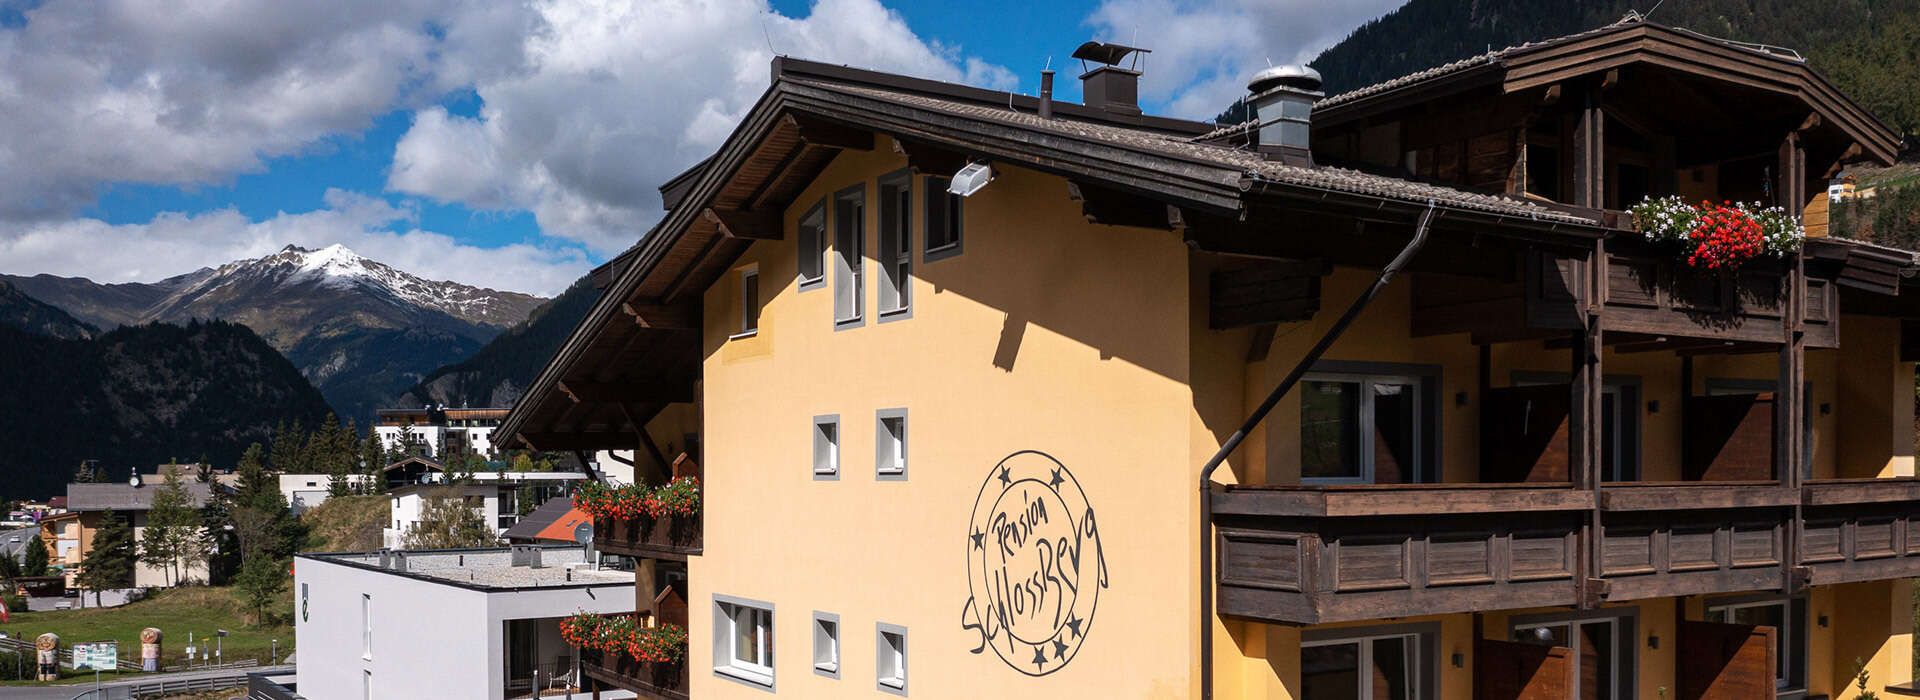 Hotel Schlossberg Hausansicht im Sommer mit Logo